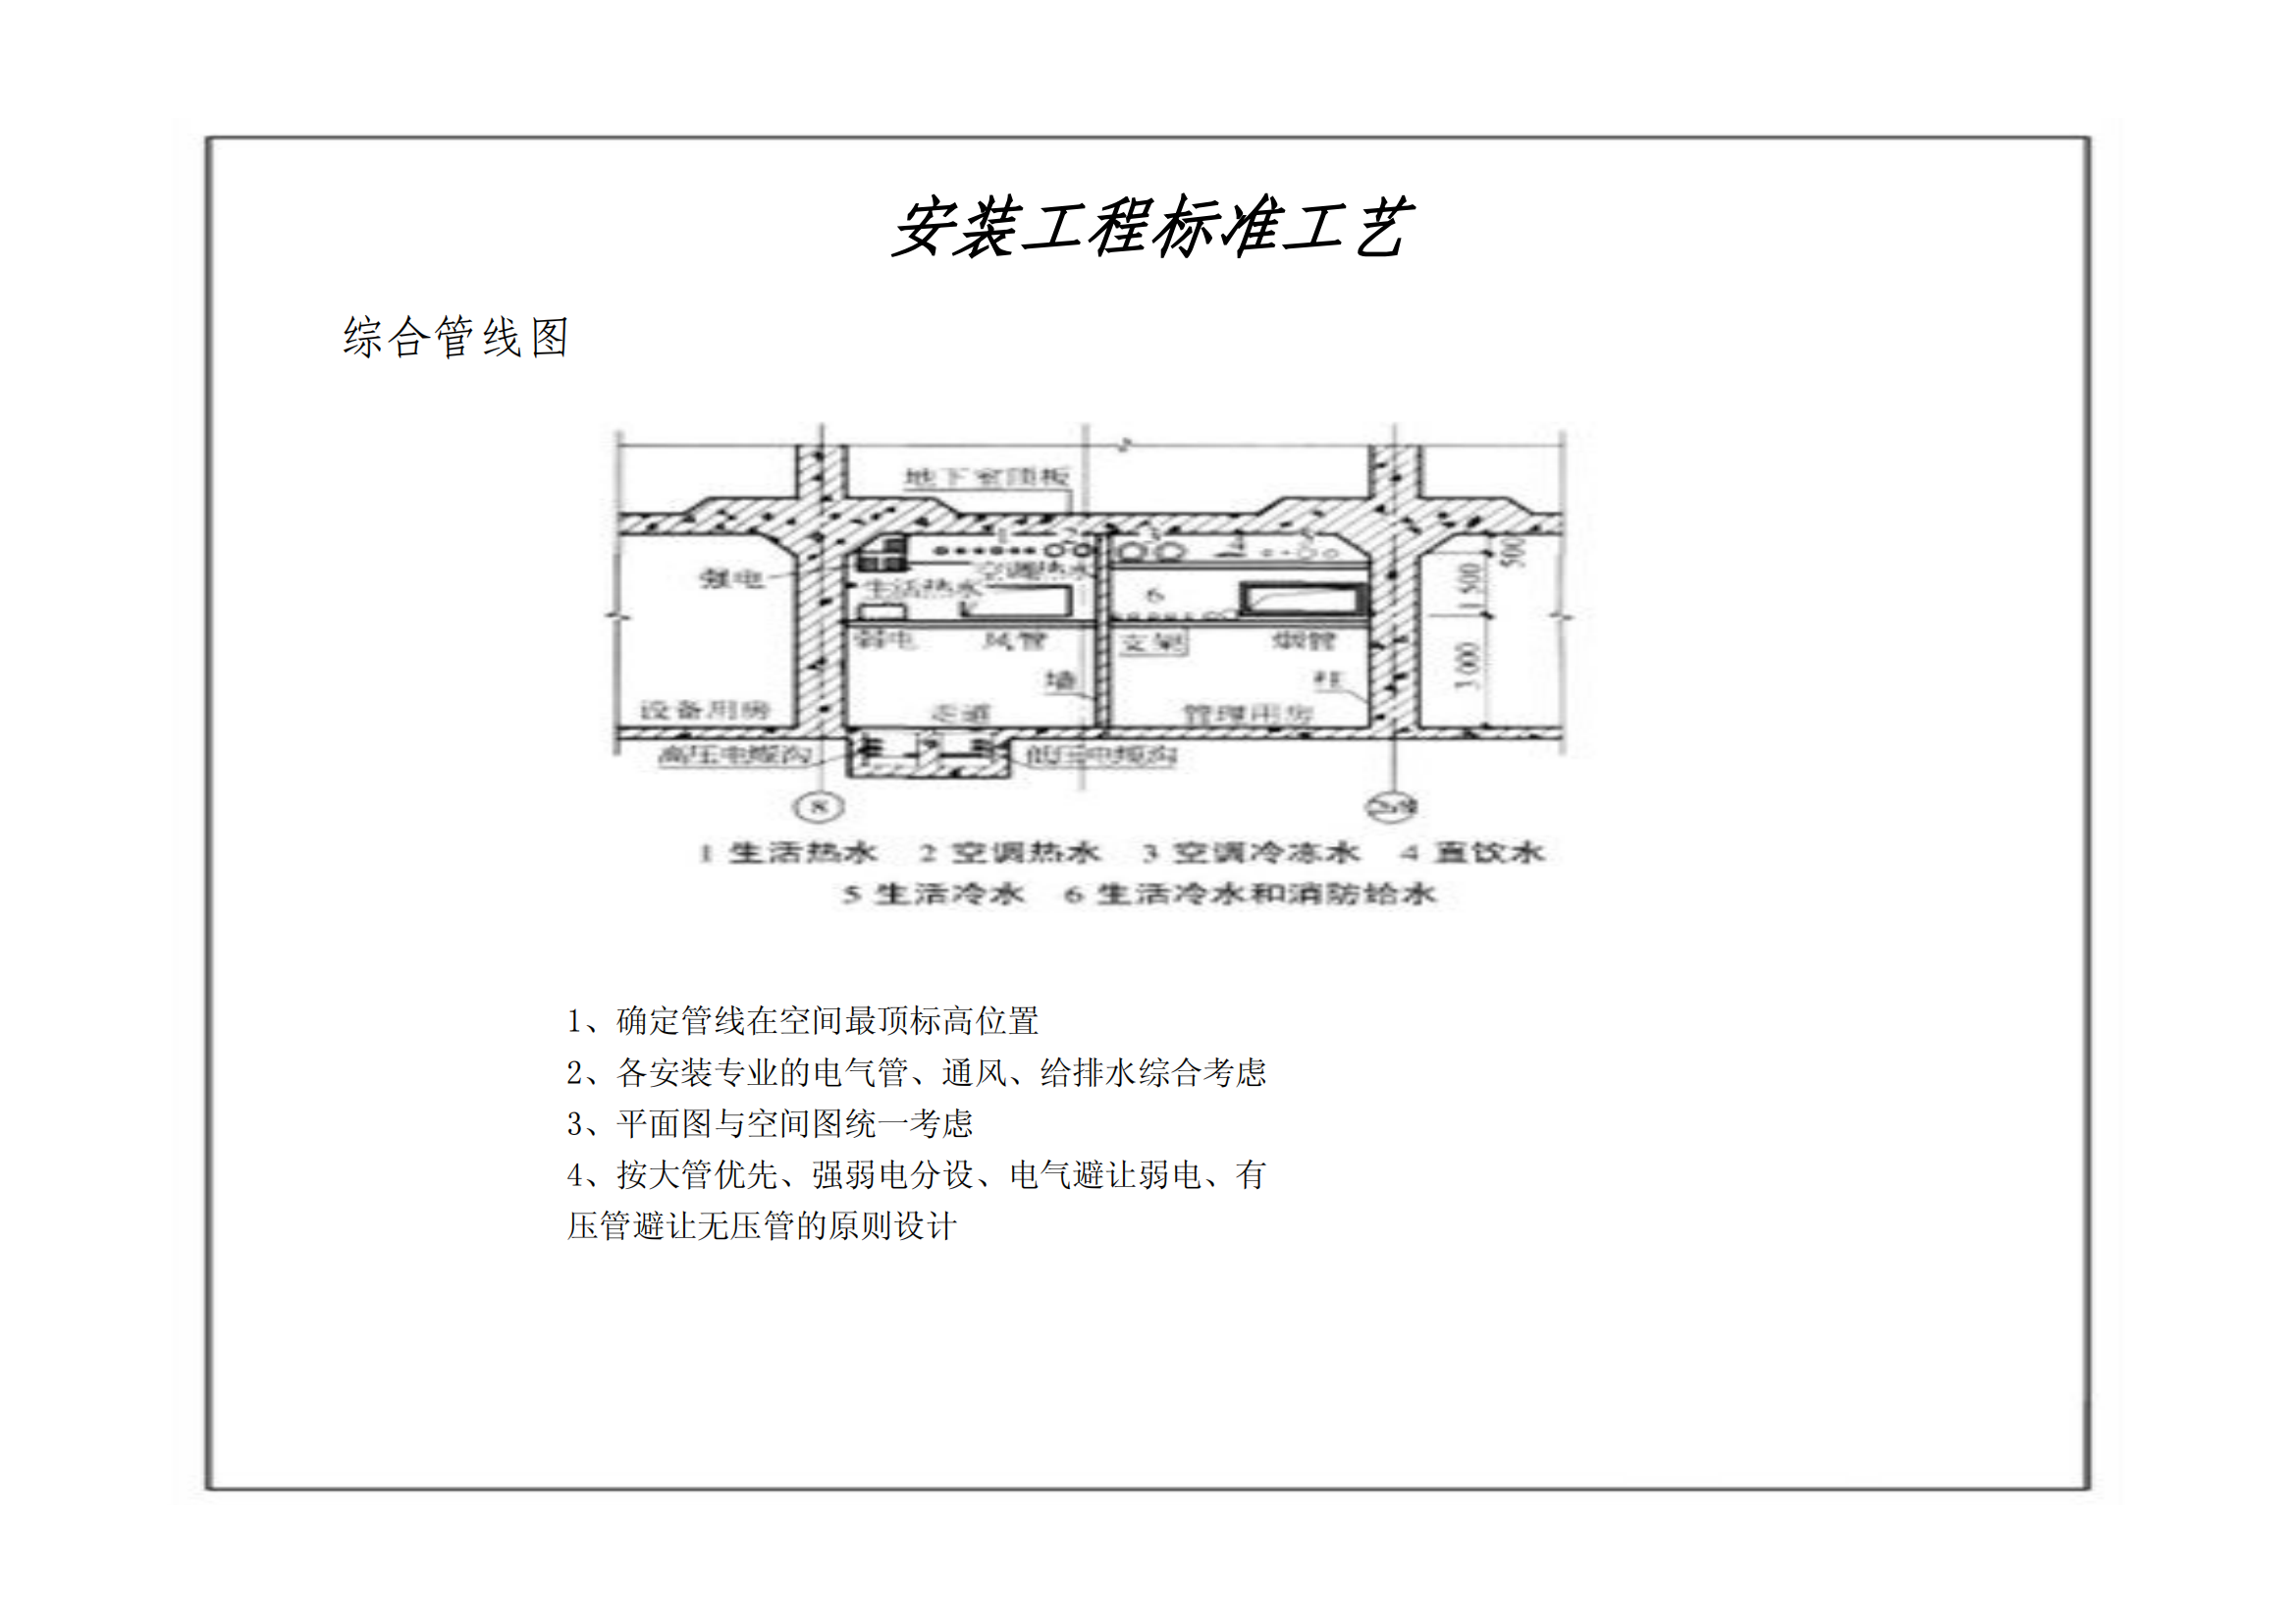 建筑工程质量标准化图集-机电安装篇插图(2)